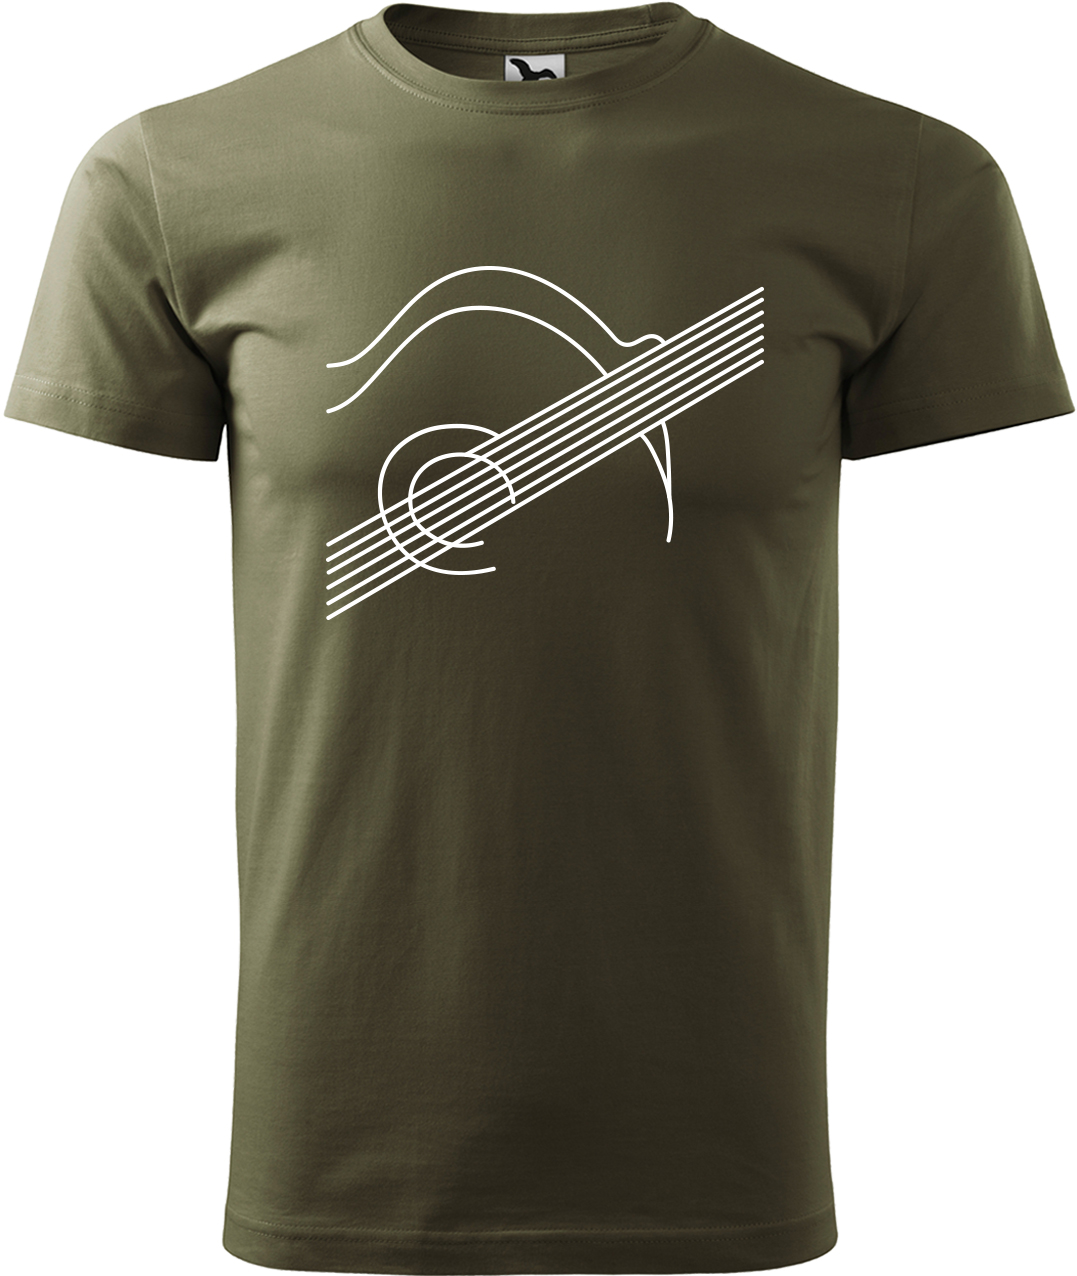 Pánské tričko s kytarou - Kytara na těle Velikost: L, Barva: Military (69), Střih: pánský